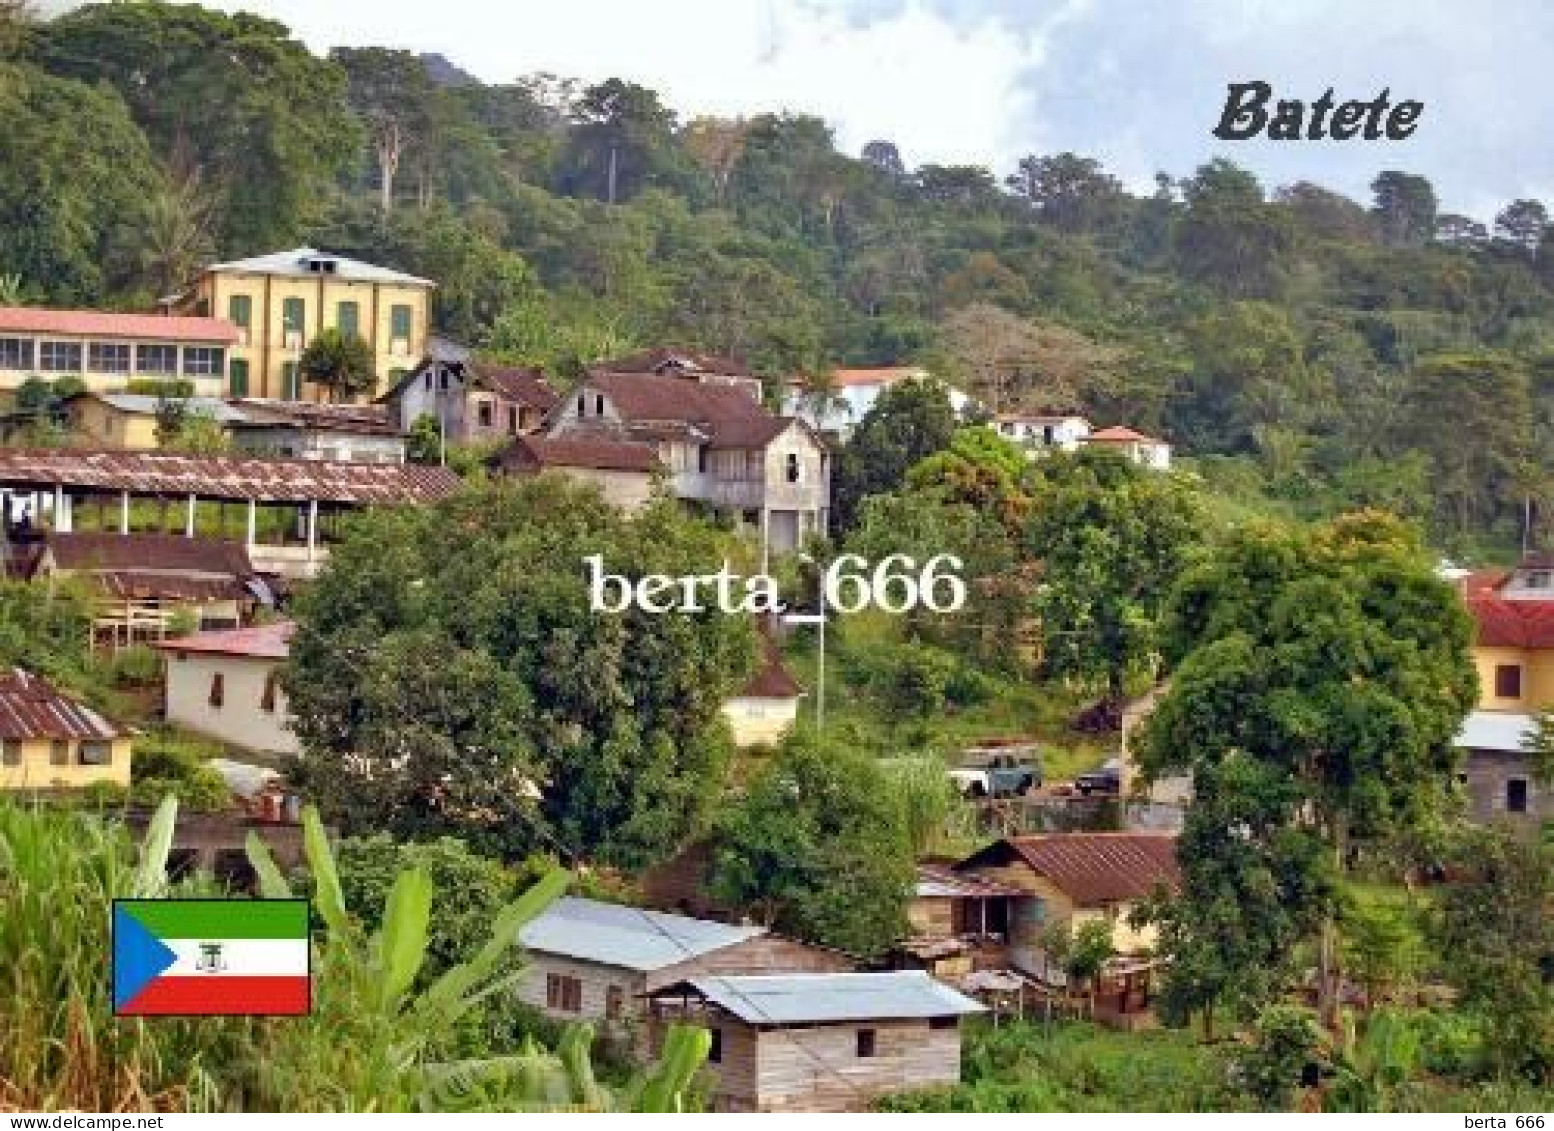 Equatorial Guinea Batete New Postcard - Äquatorial-Guinea